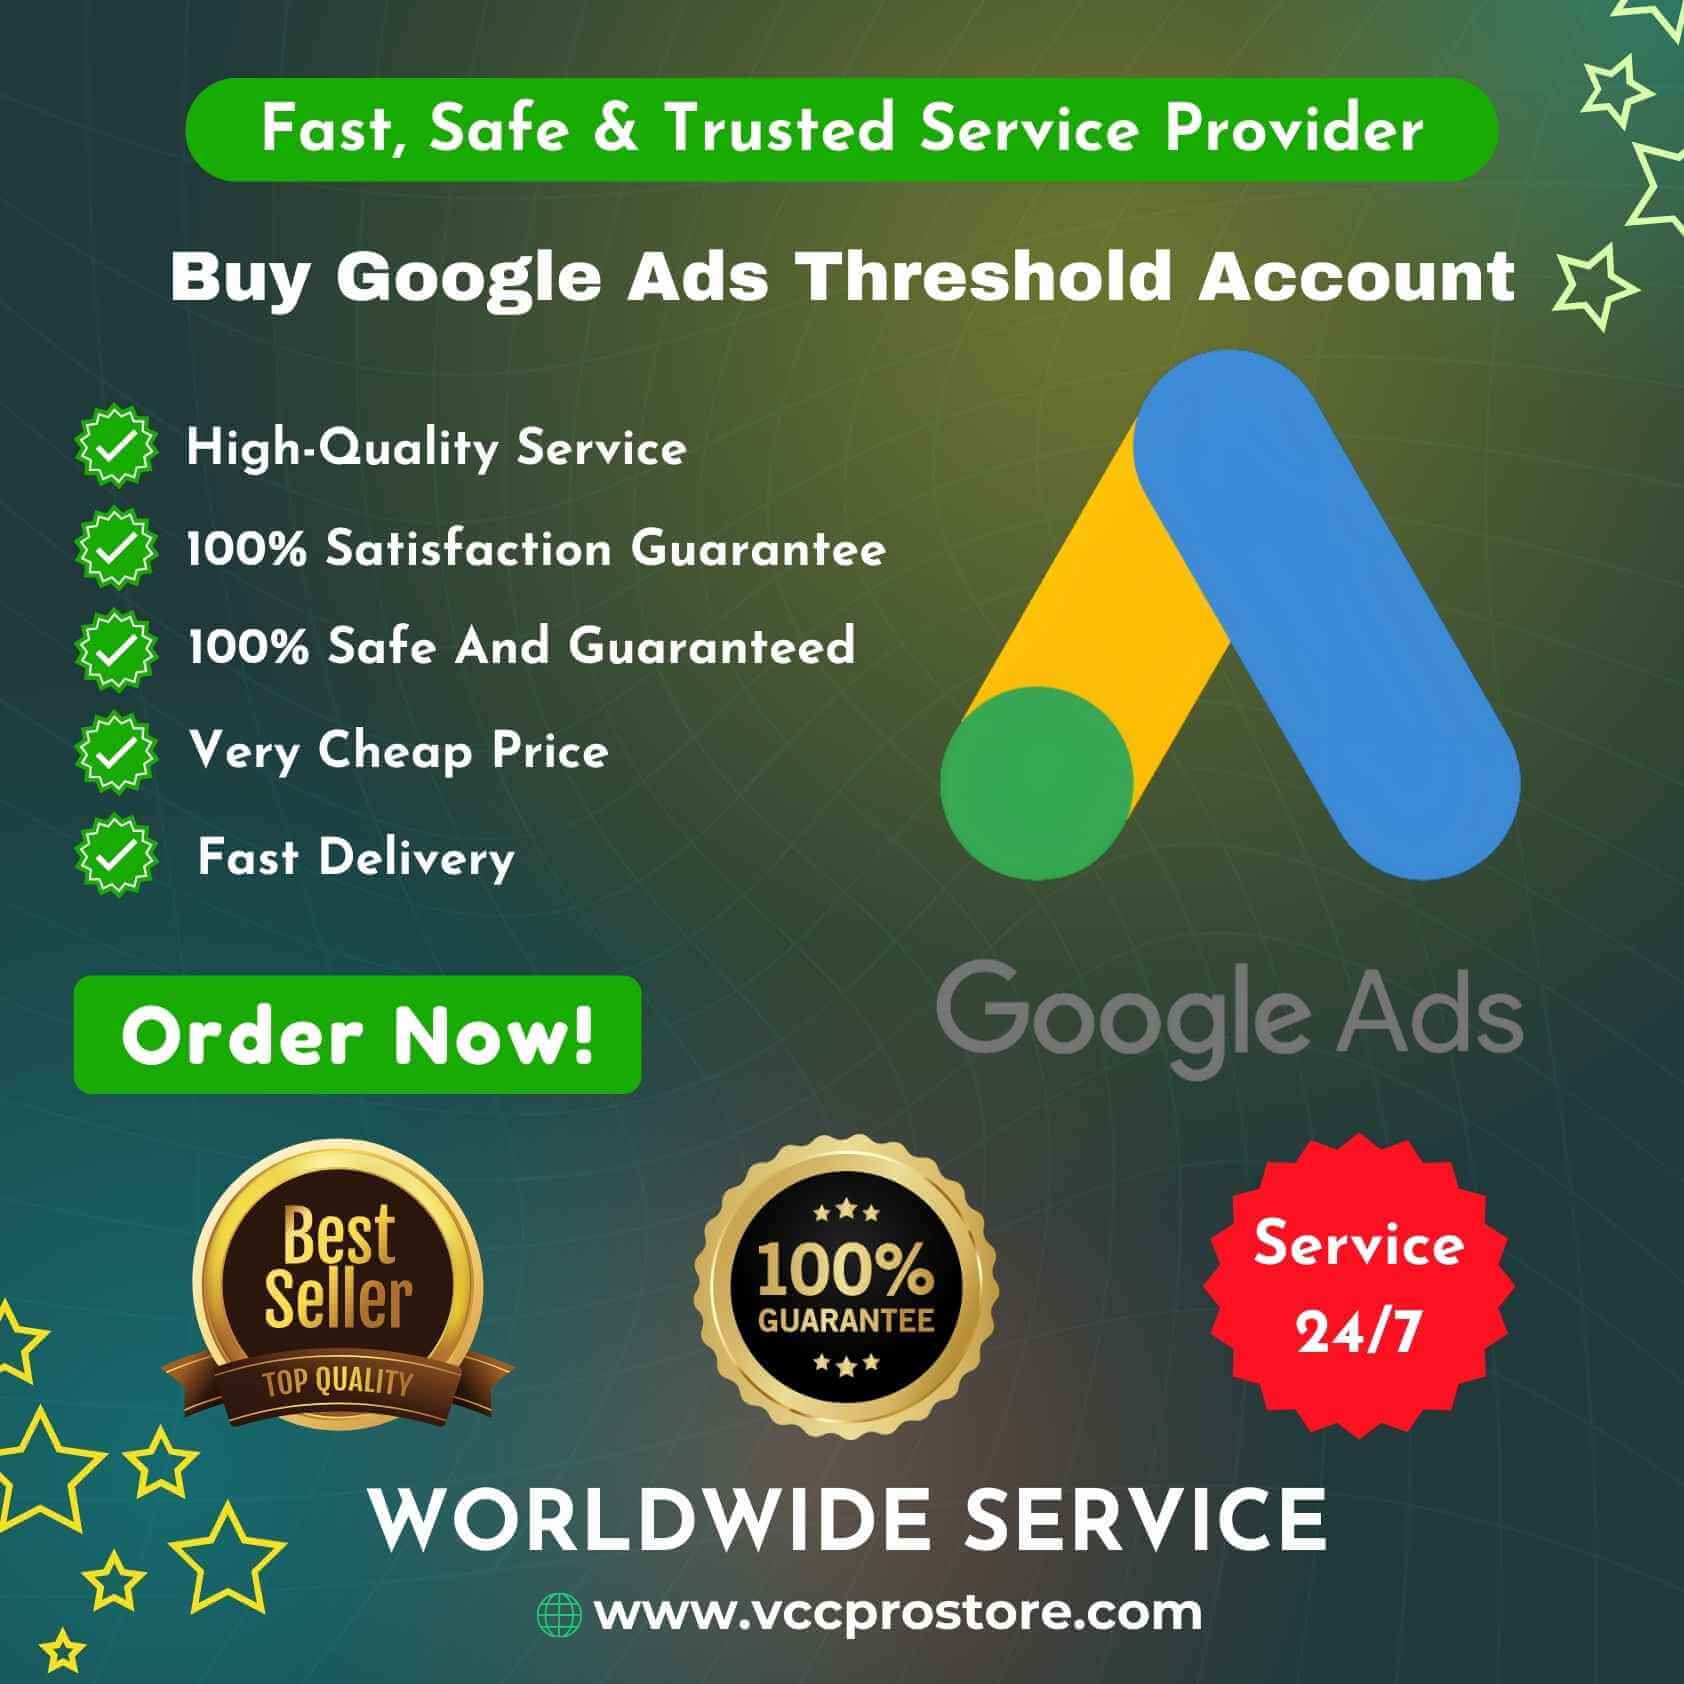 Buy Google Ads Threshold Account - Threshold $350 Account